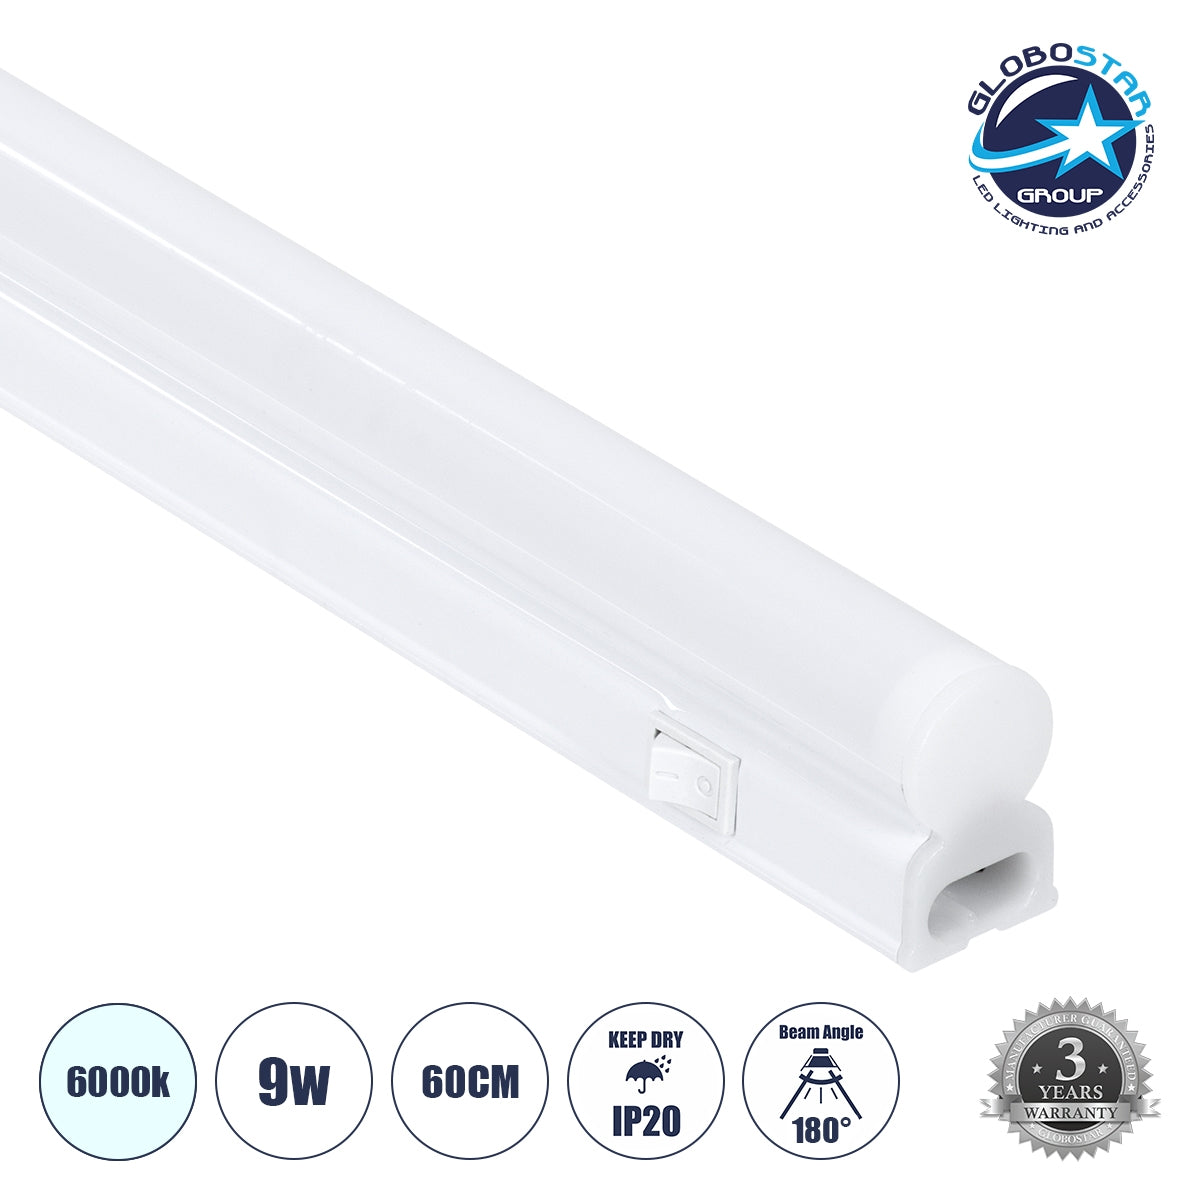 GloboStar® TUBO 60787 Γραμμικό Φωτιστικό Οροφής Linear LED Τύπου T5 Επεκτεινόμενο 9W 900lm 180° AC 220-240V IP20 Πάγκου Κουζίνας με Διακόπτη On/Off Μ60 x Π2.2 x Υ3.5cm Ψυχρό Λευκό 6000K - Λευκό